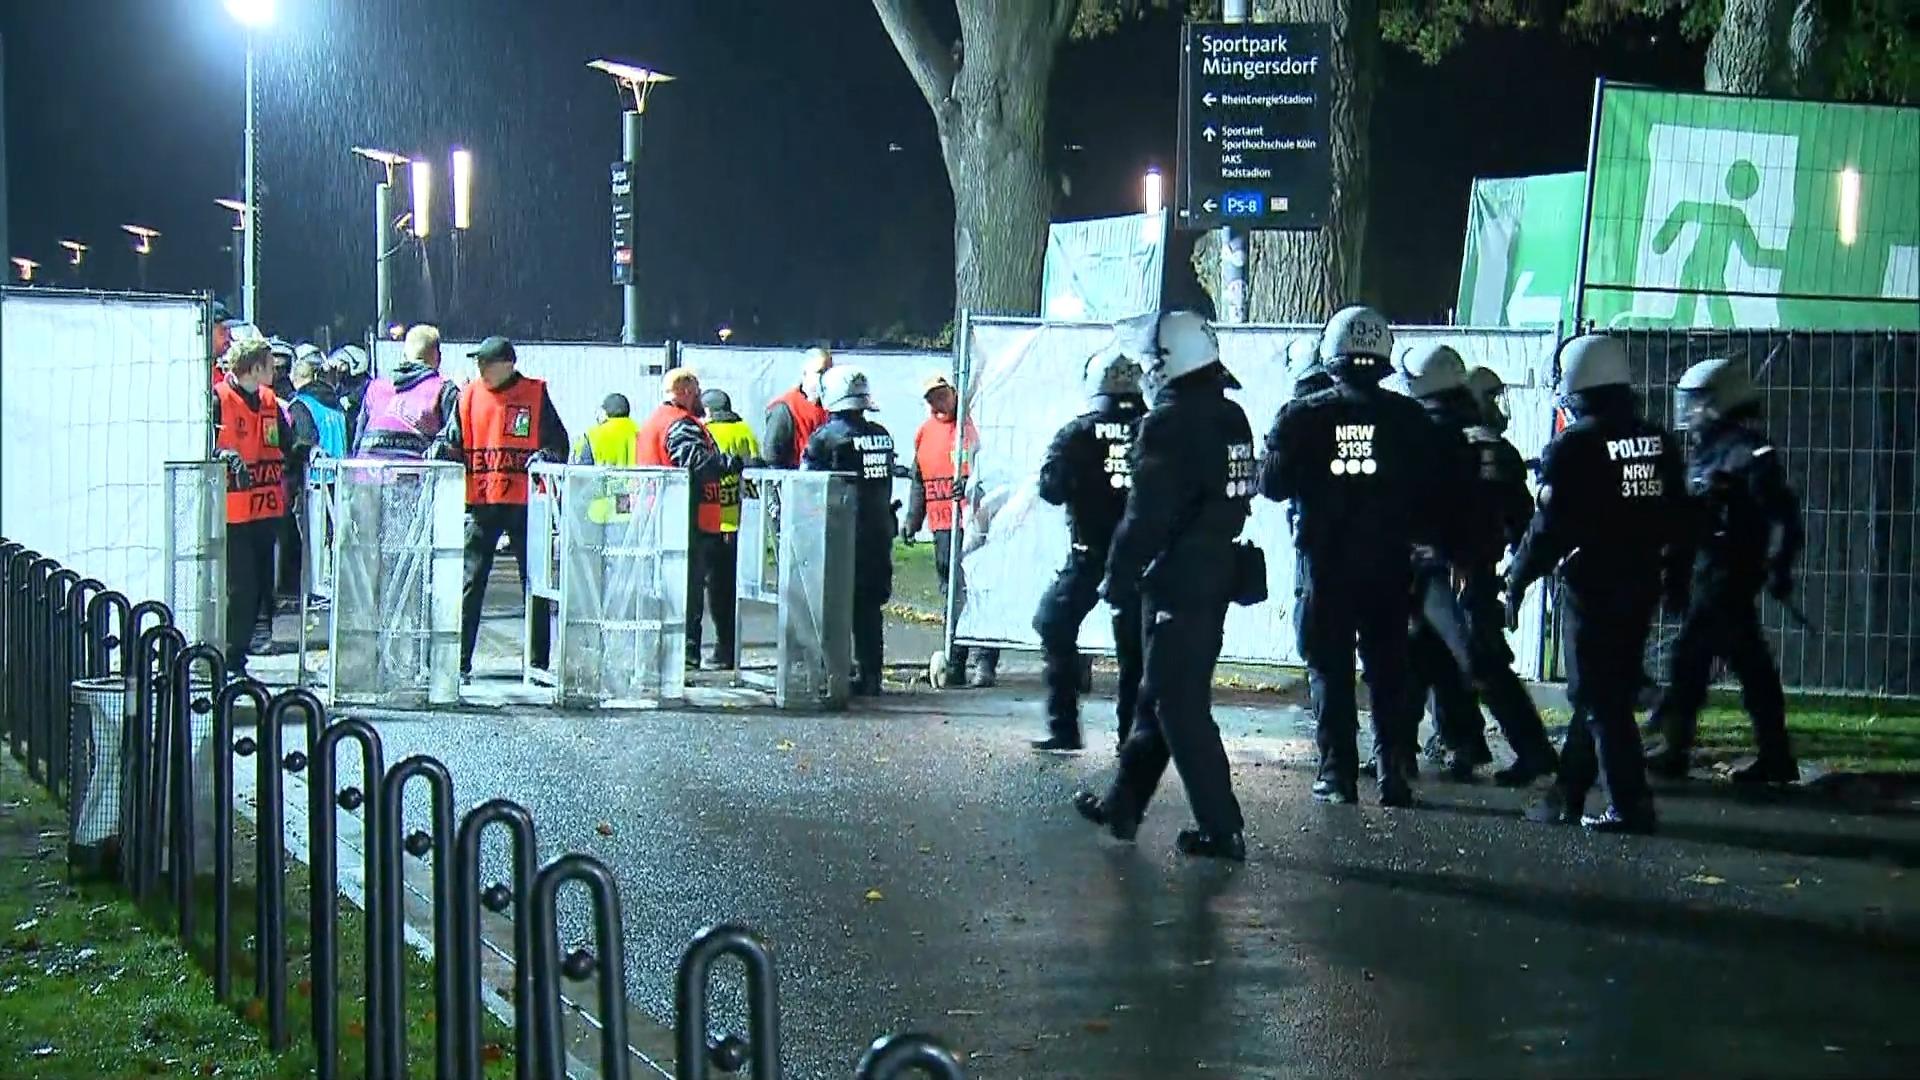 Kölner Polizei verfolgte Nizza-Fans auf Schritt und Tritt Keine Randale vor Showdown